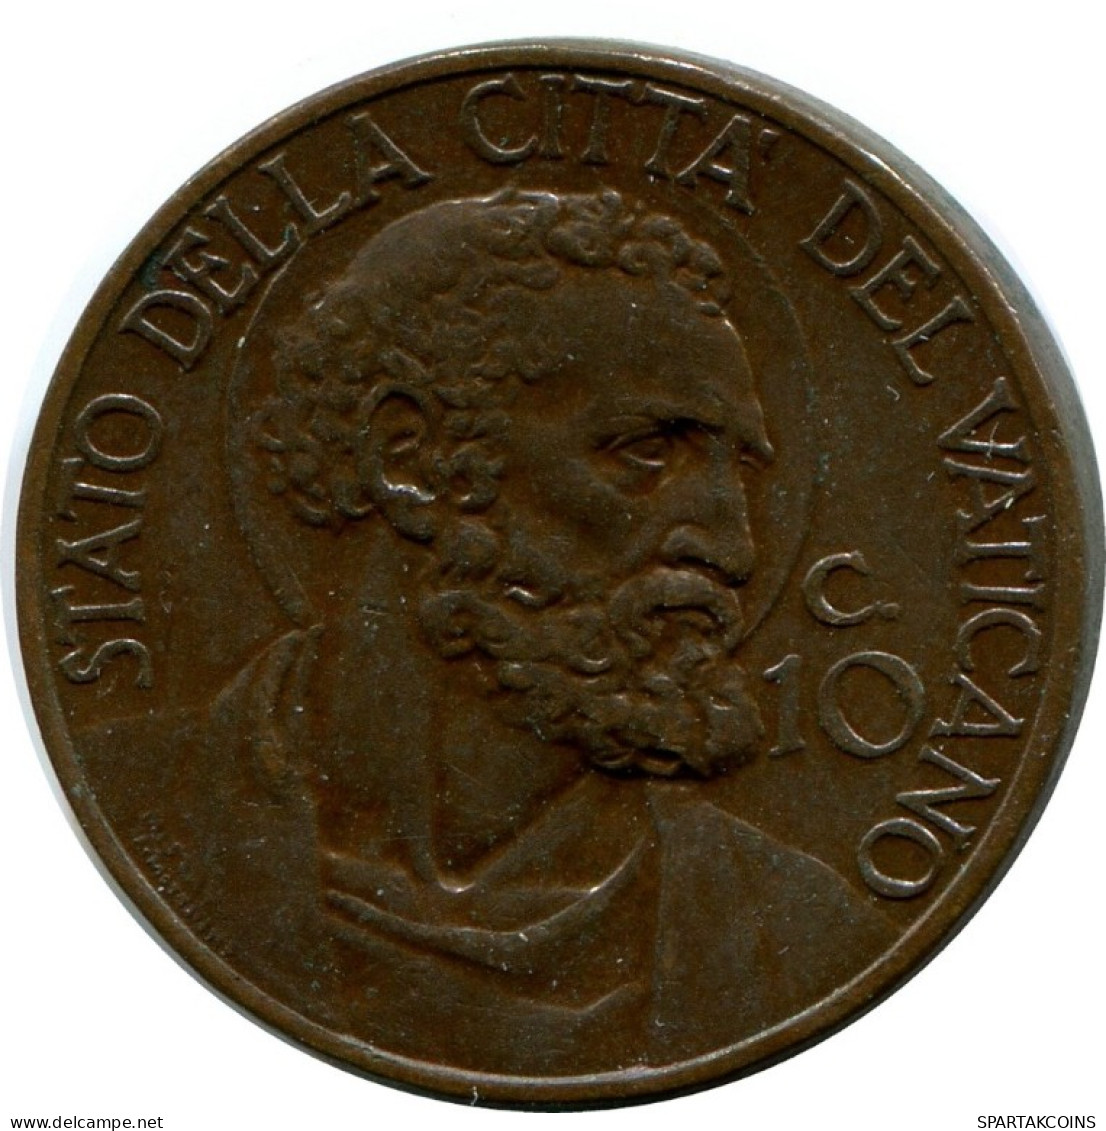 10 CENTESIMI 1937 VATICANO VATICAN Moneda Pius XI (1922-1939) #AH347.16.E.A - Vatikan